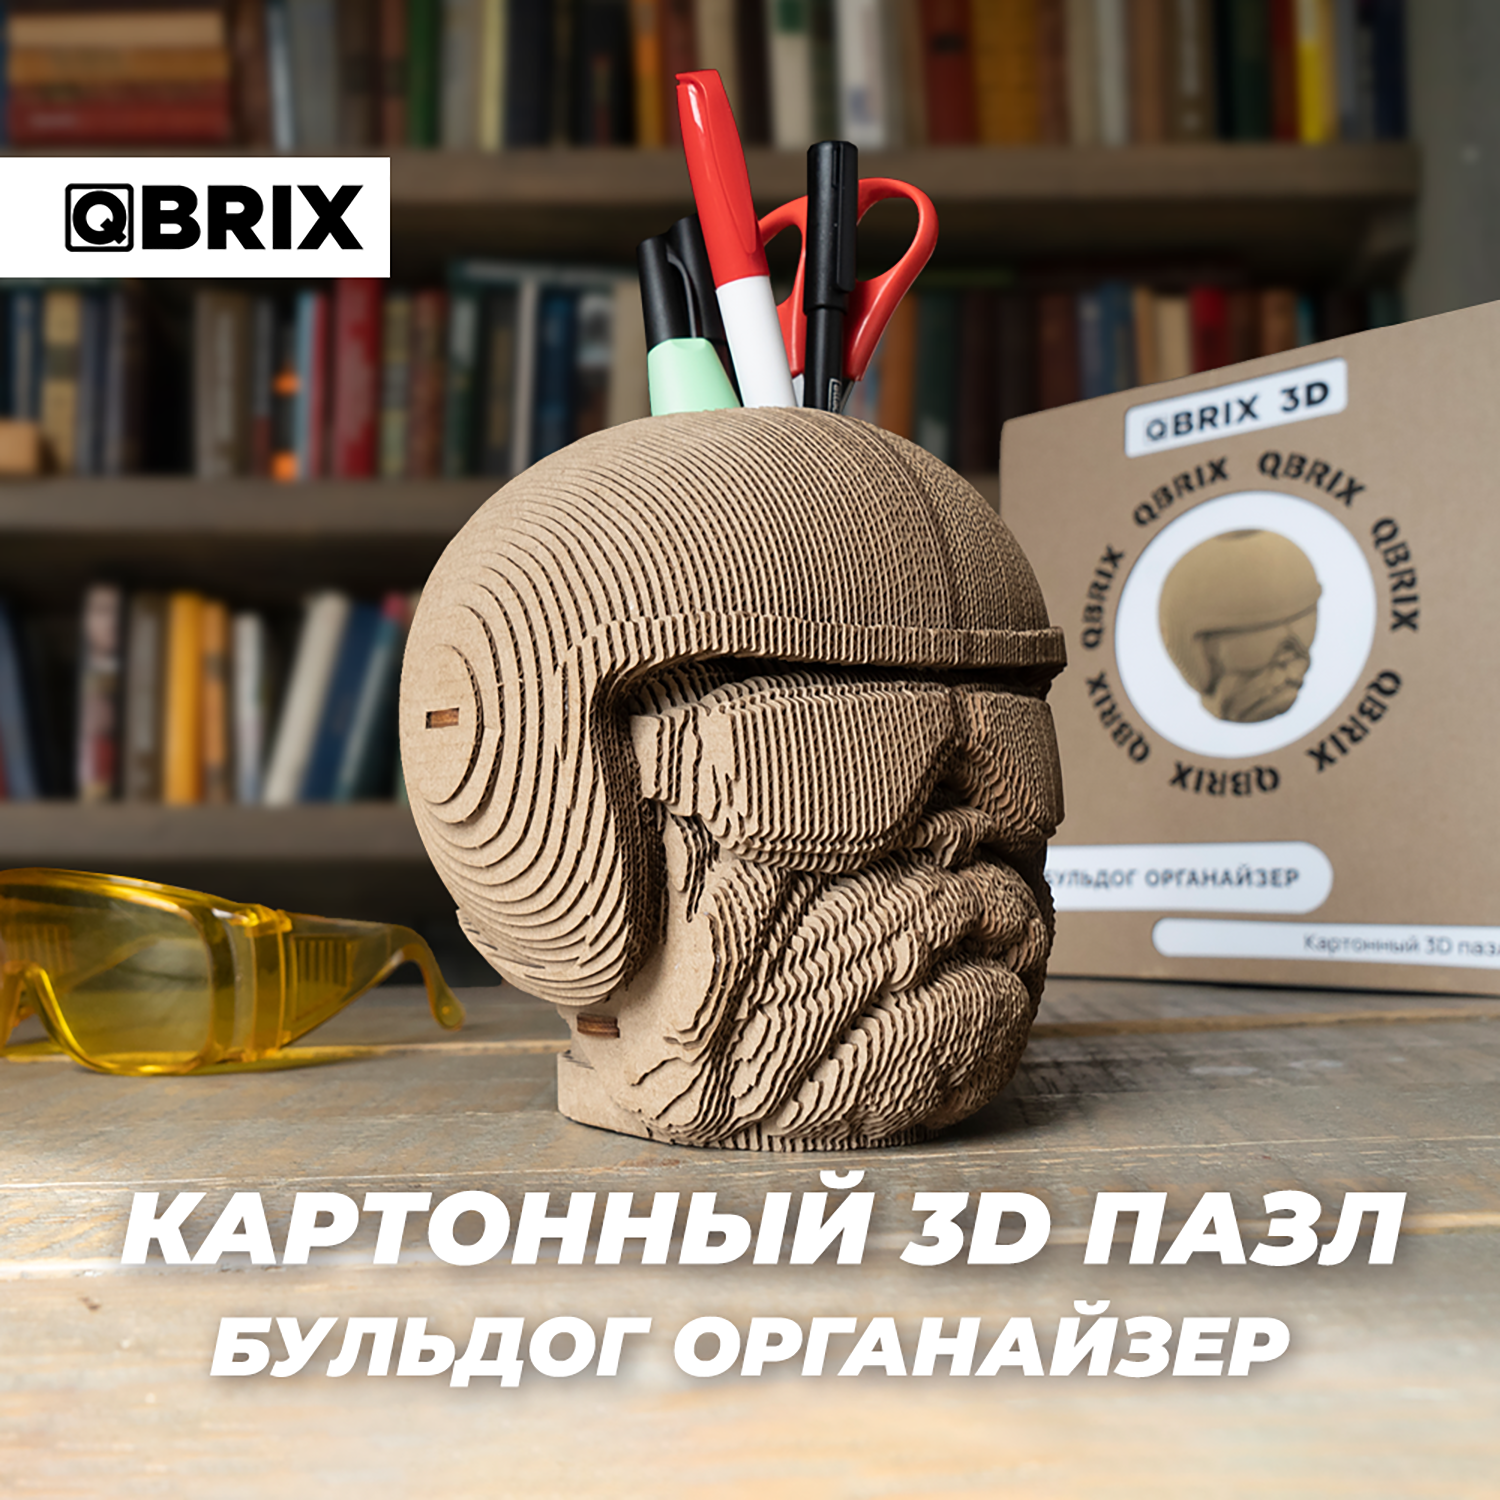 Конструктор QBRIX 3D картонный Бульдог Органайзер 20005 20005 - фото 8